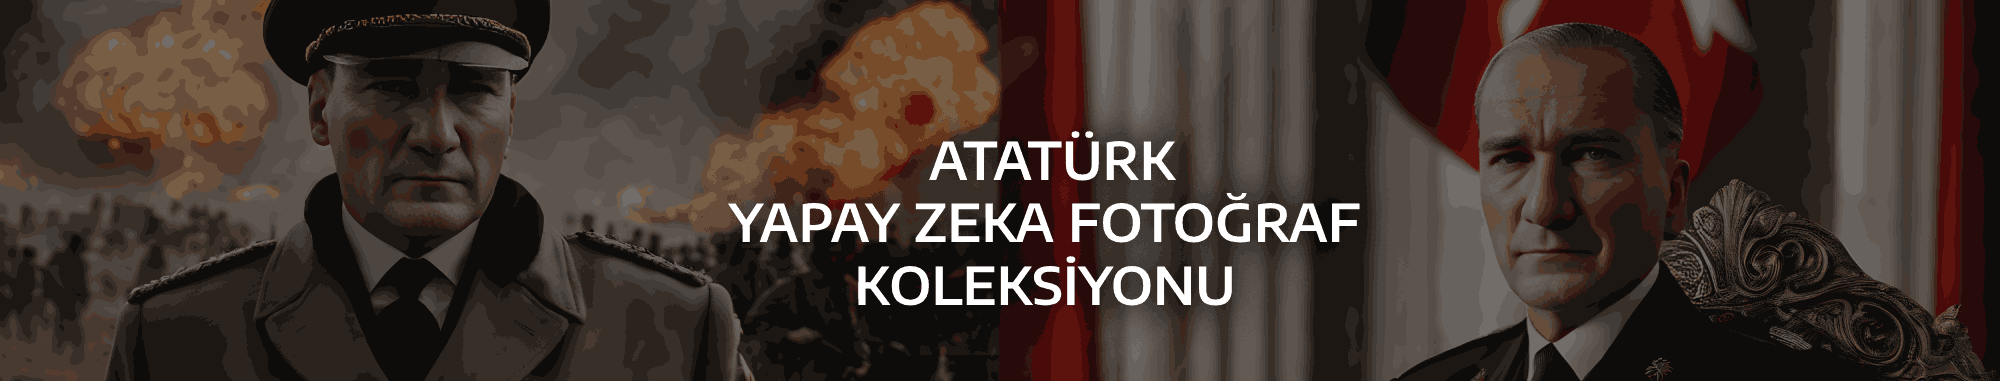 Atatürk Yapay Zeka Fotoğraf Koleksiyonu